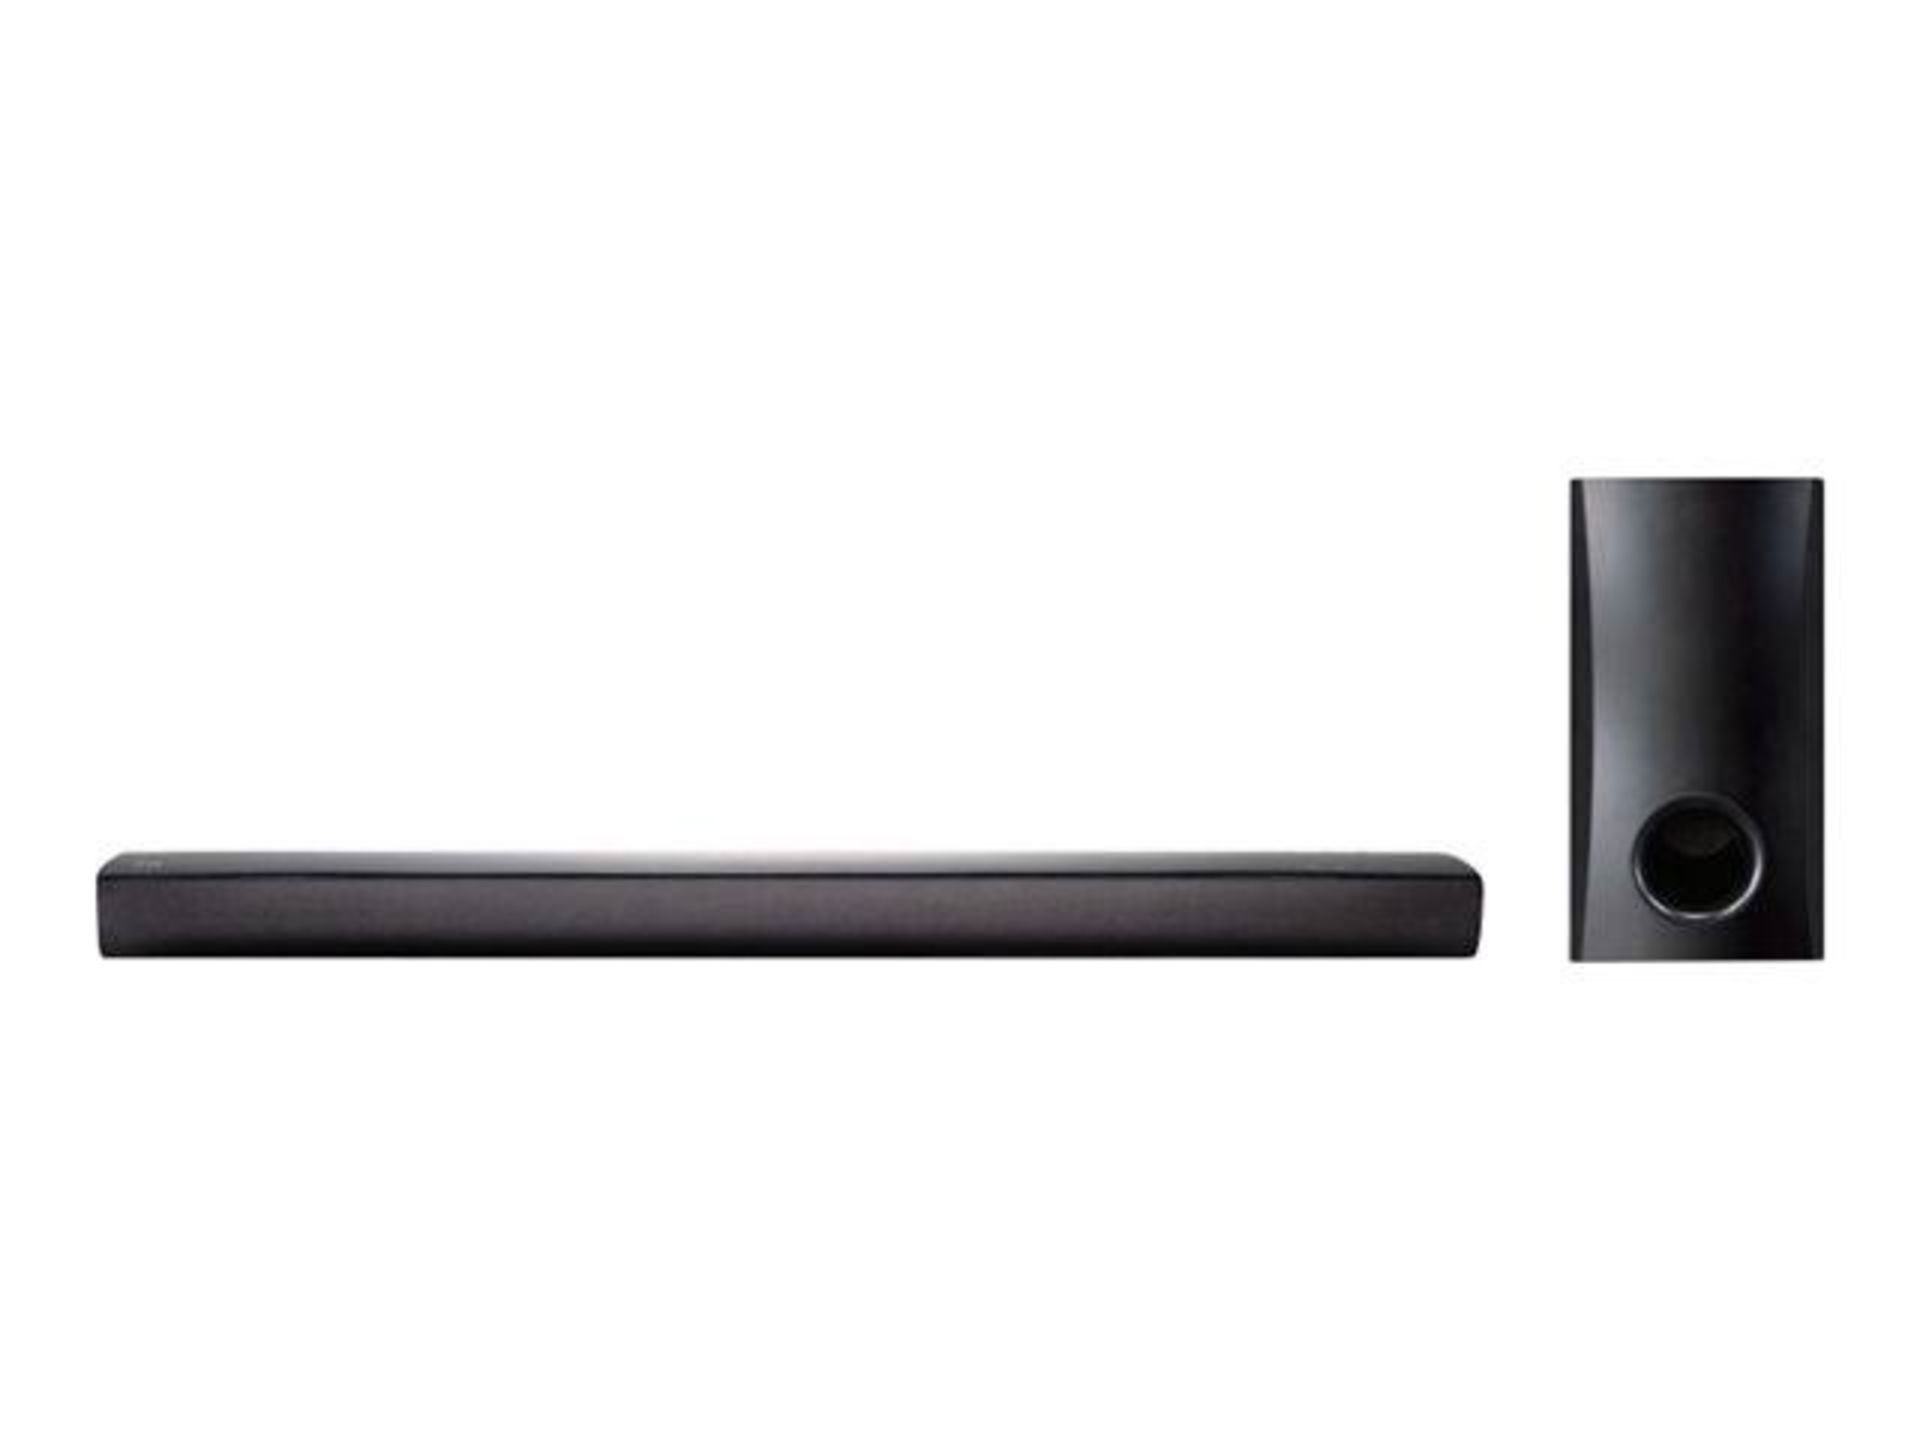 V Grade A NB2540 LG 120W Home Cinema Soundbar System 2.1 With Sub - Image 9 of 10